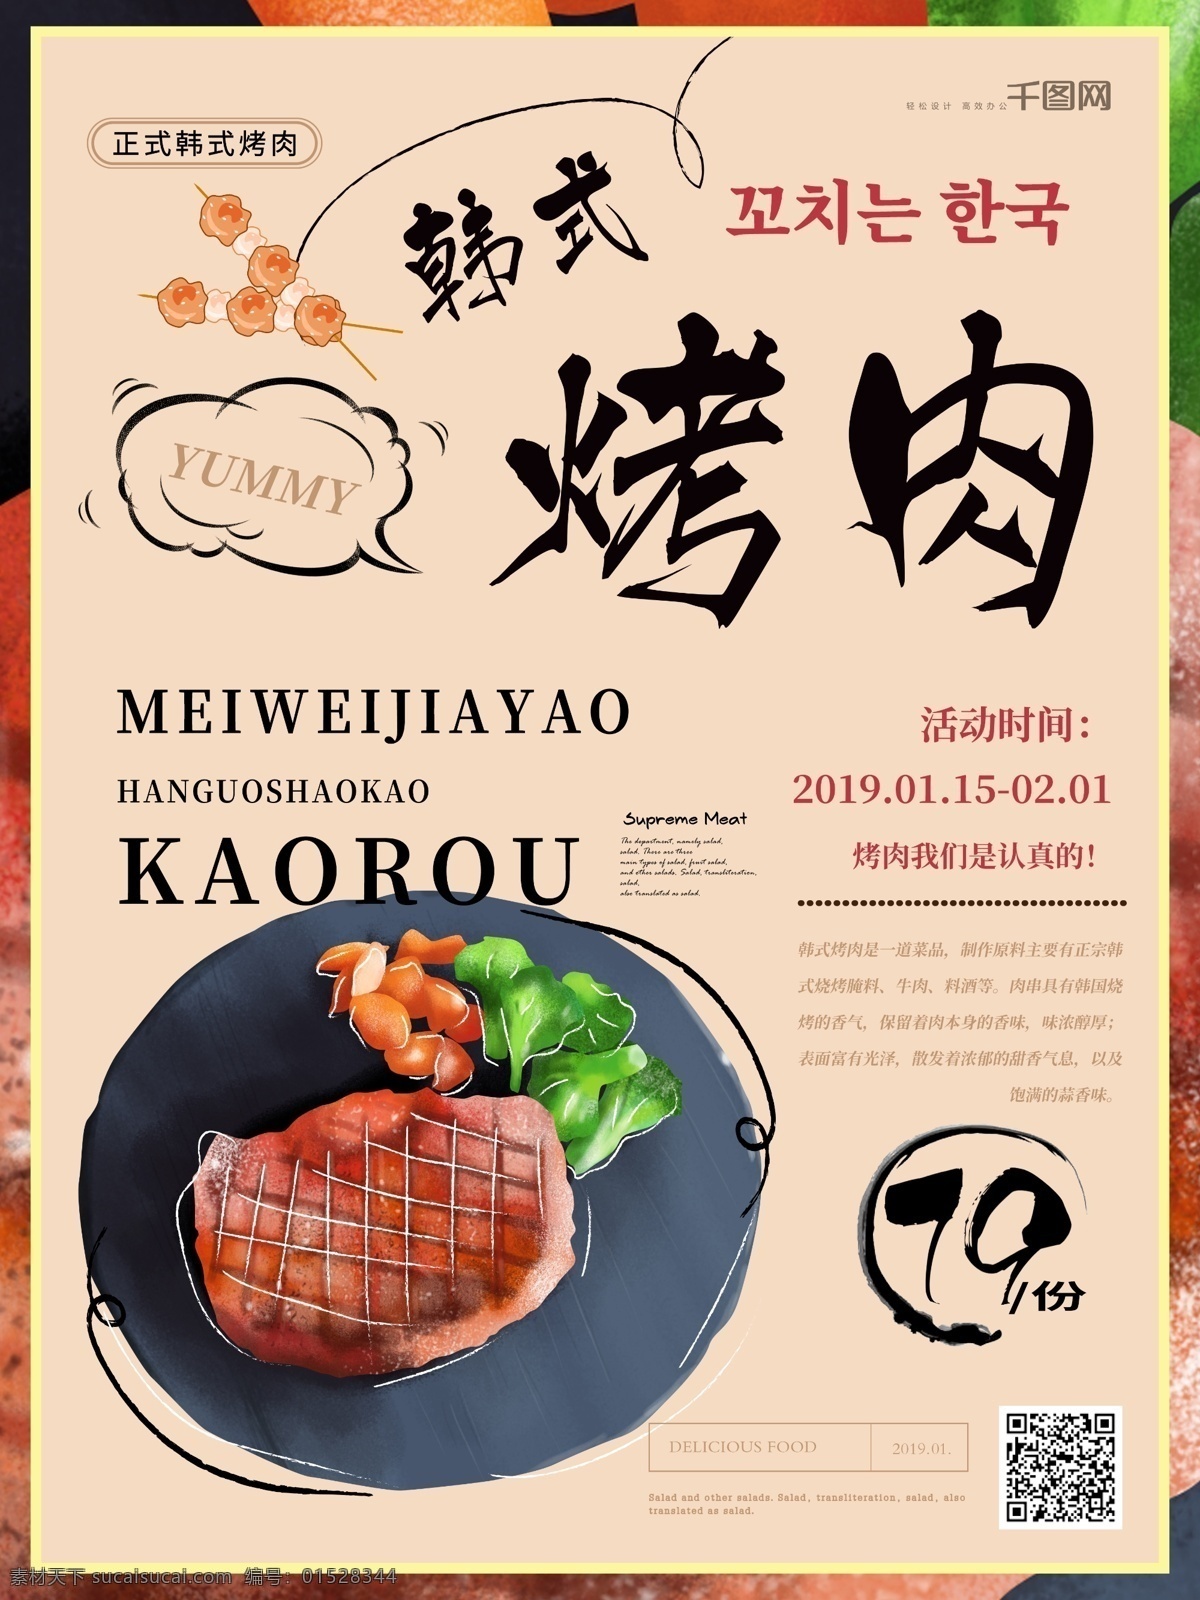 简约 手绘 韩式 烤肉 插 画风 美食 海报 美食海报 韩国 韩式烤肉 插画风 肉